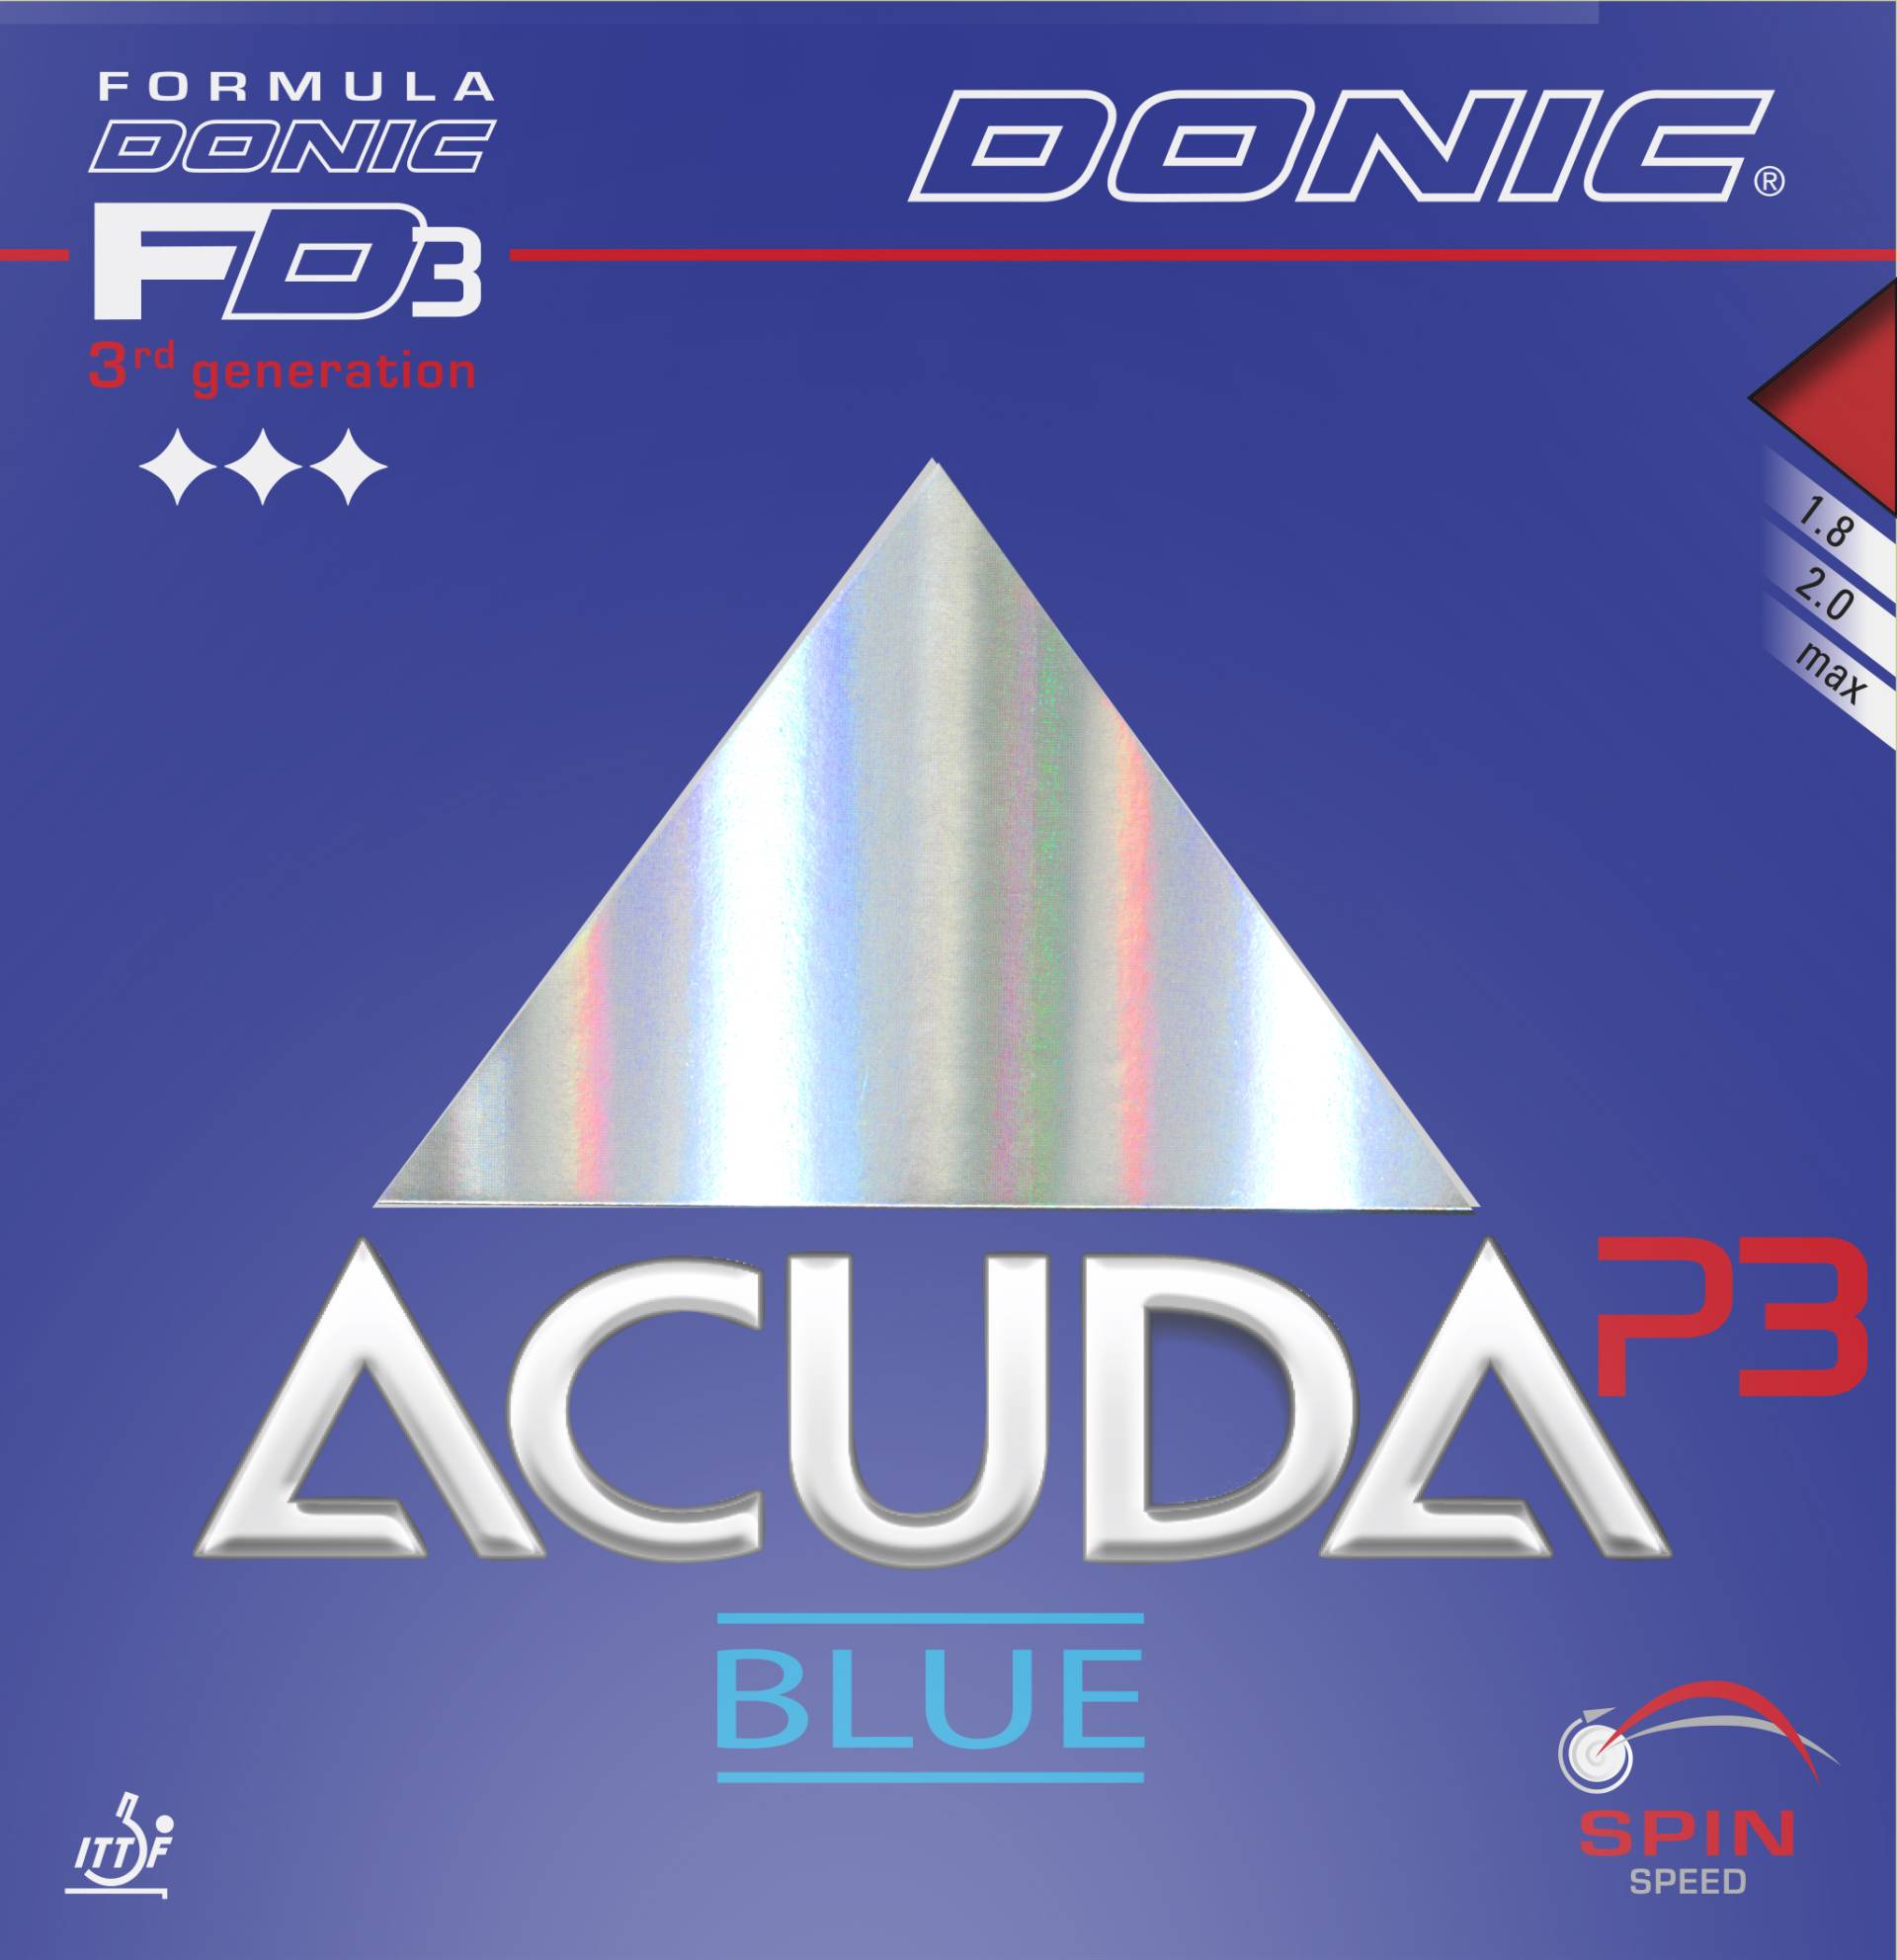 Donic Acuda Blue P3 - Tischtennis Belag von Donic